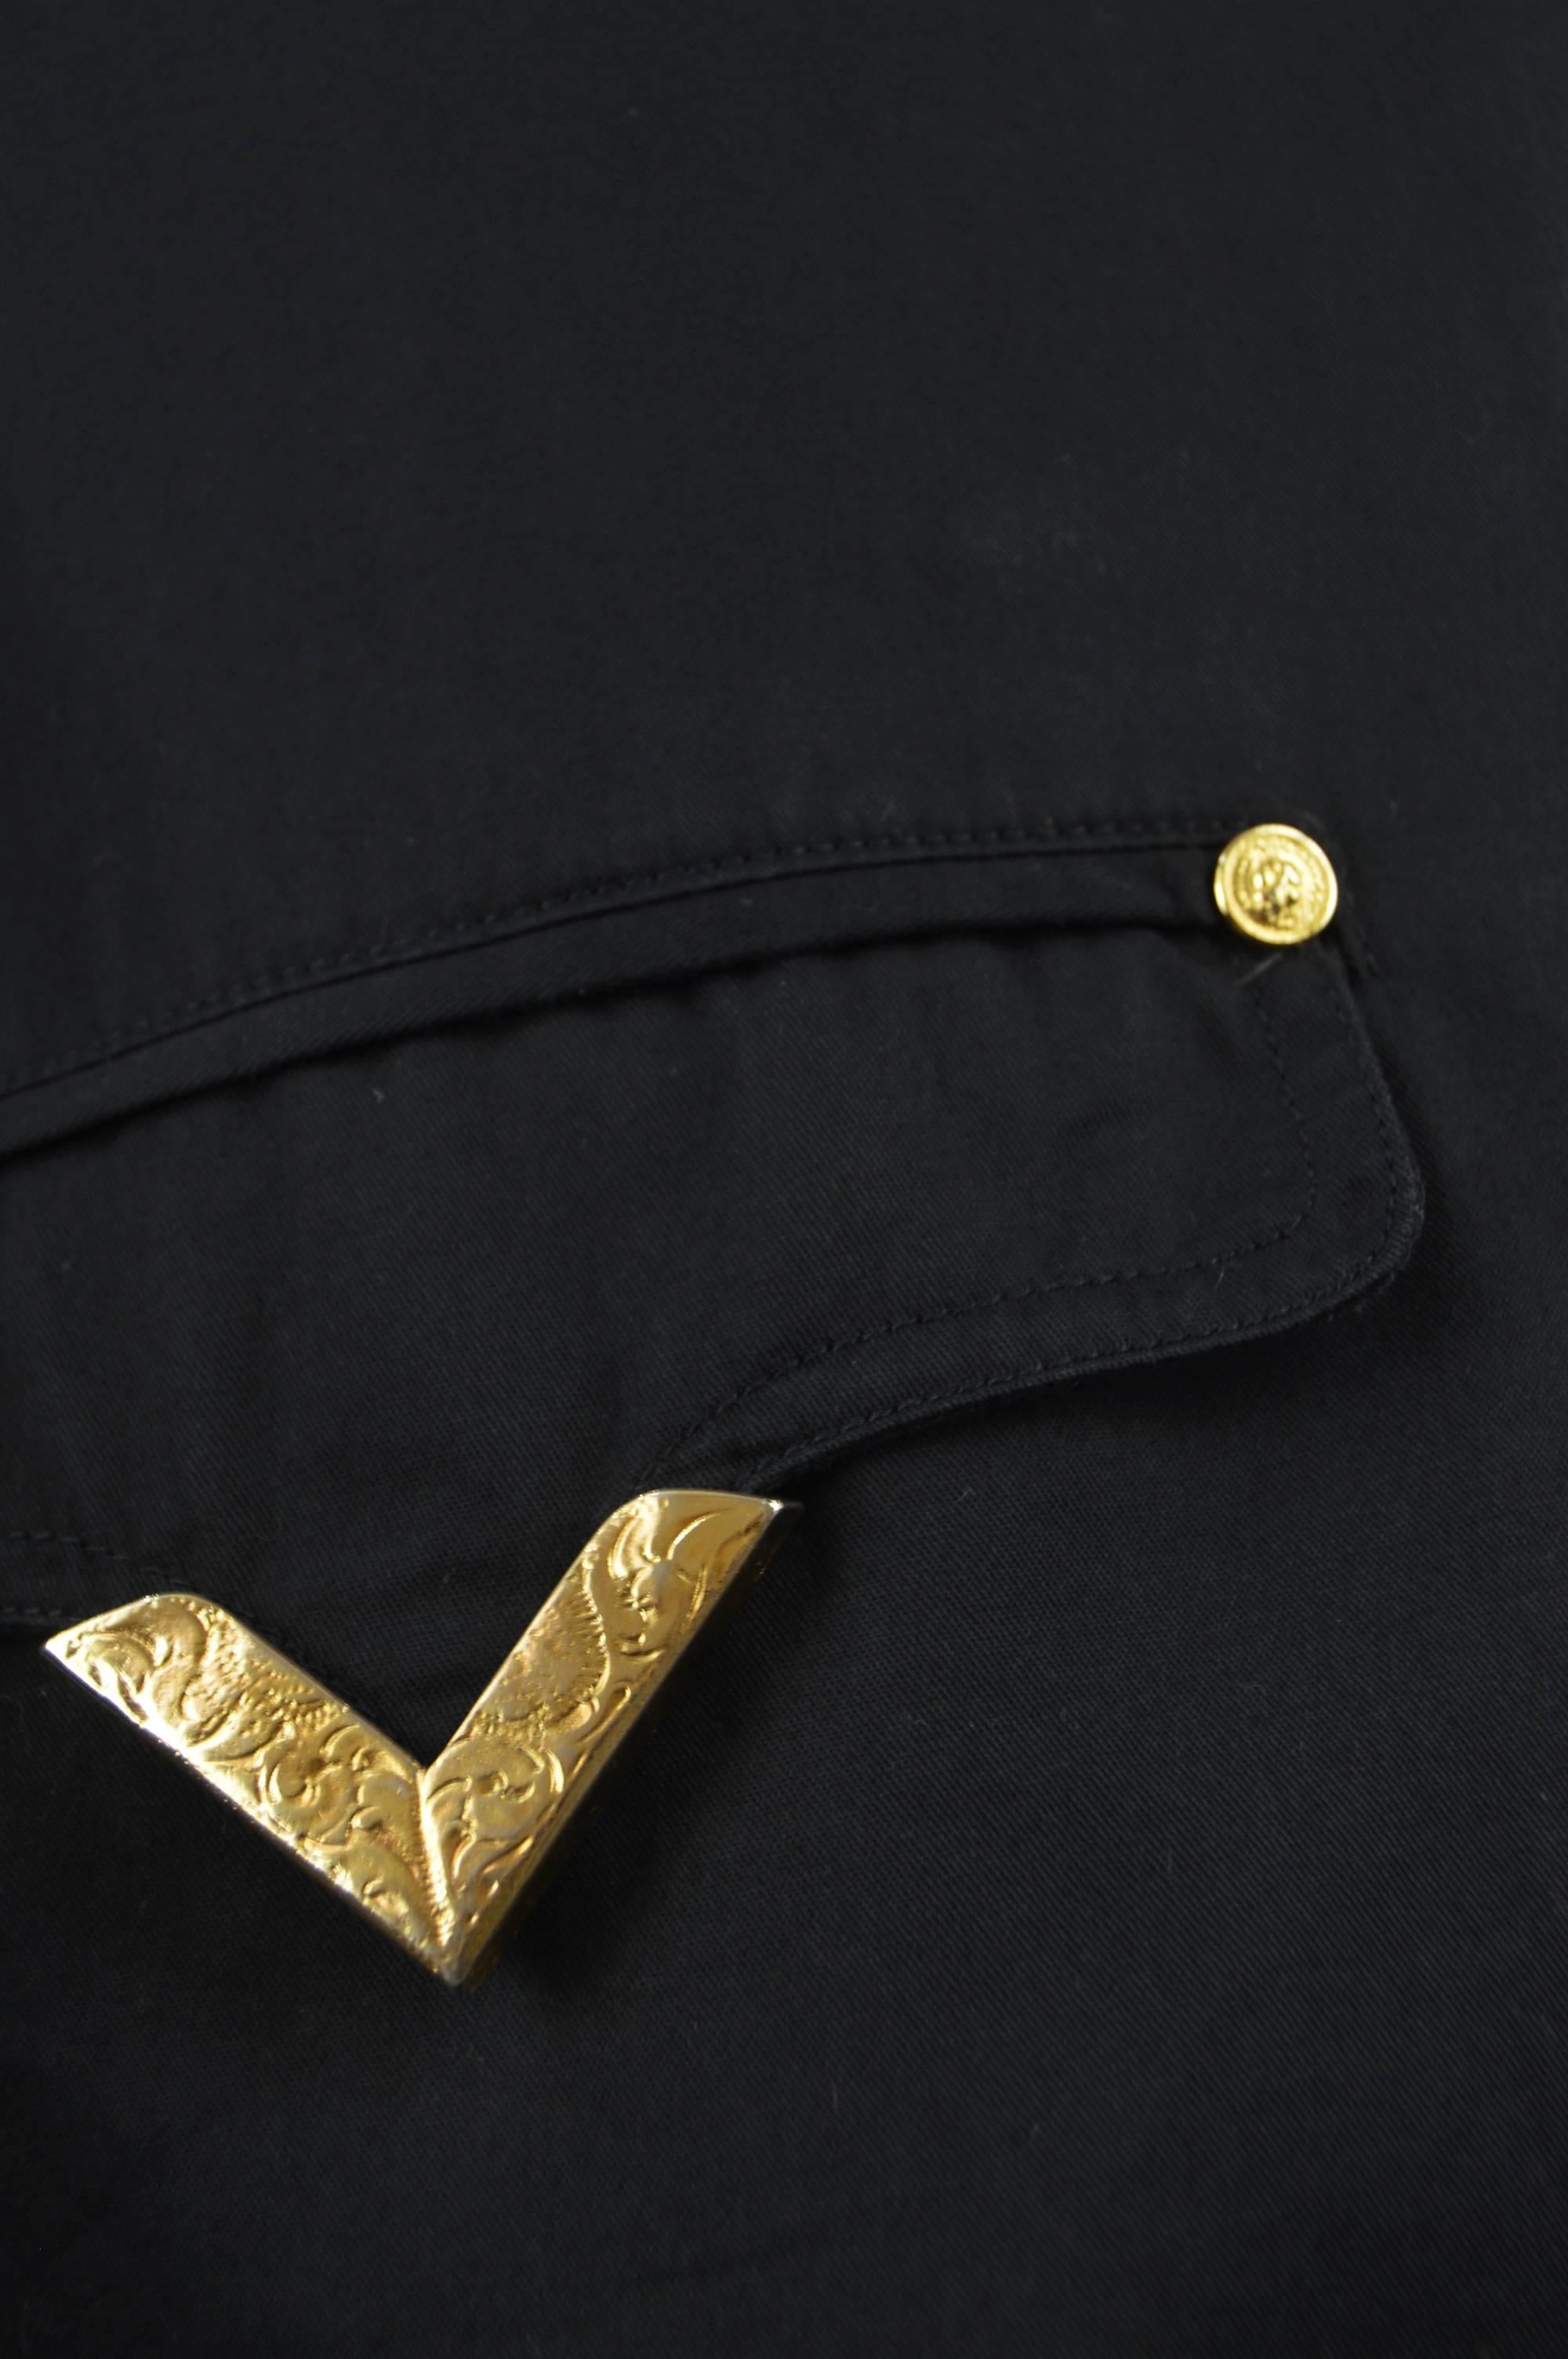 Gianni Versace Versus Vintage 1990's Men's Rare S & M Black & Gold Cotton Blazer For Sale 6